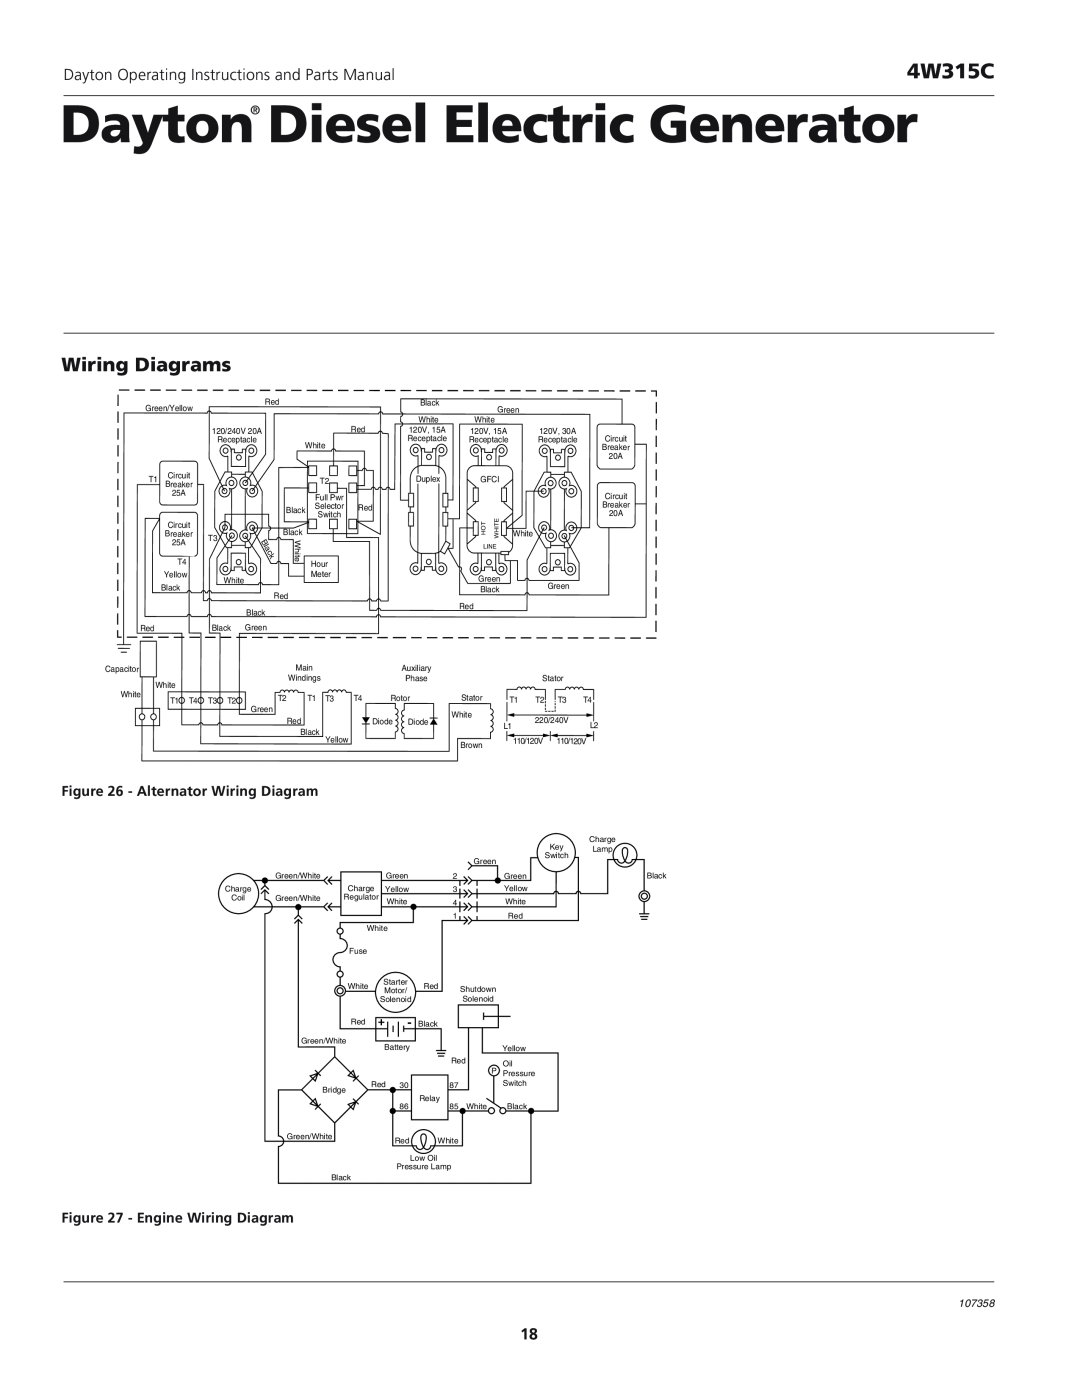 VDO Dayton 4W315C Wiring Diagrams, Dayton Diesel Electric Generator, Alternator Wiring Diagram, Engine Wiring Diagram 